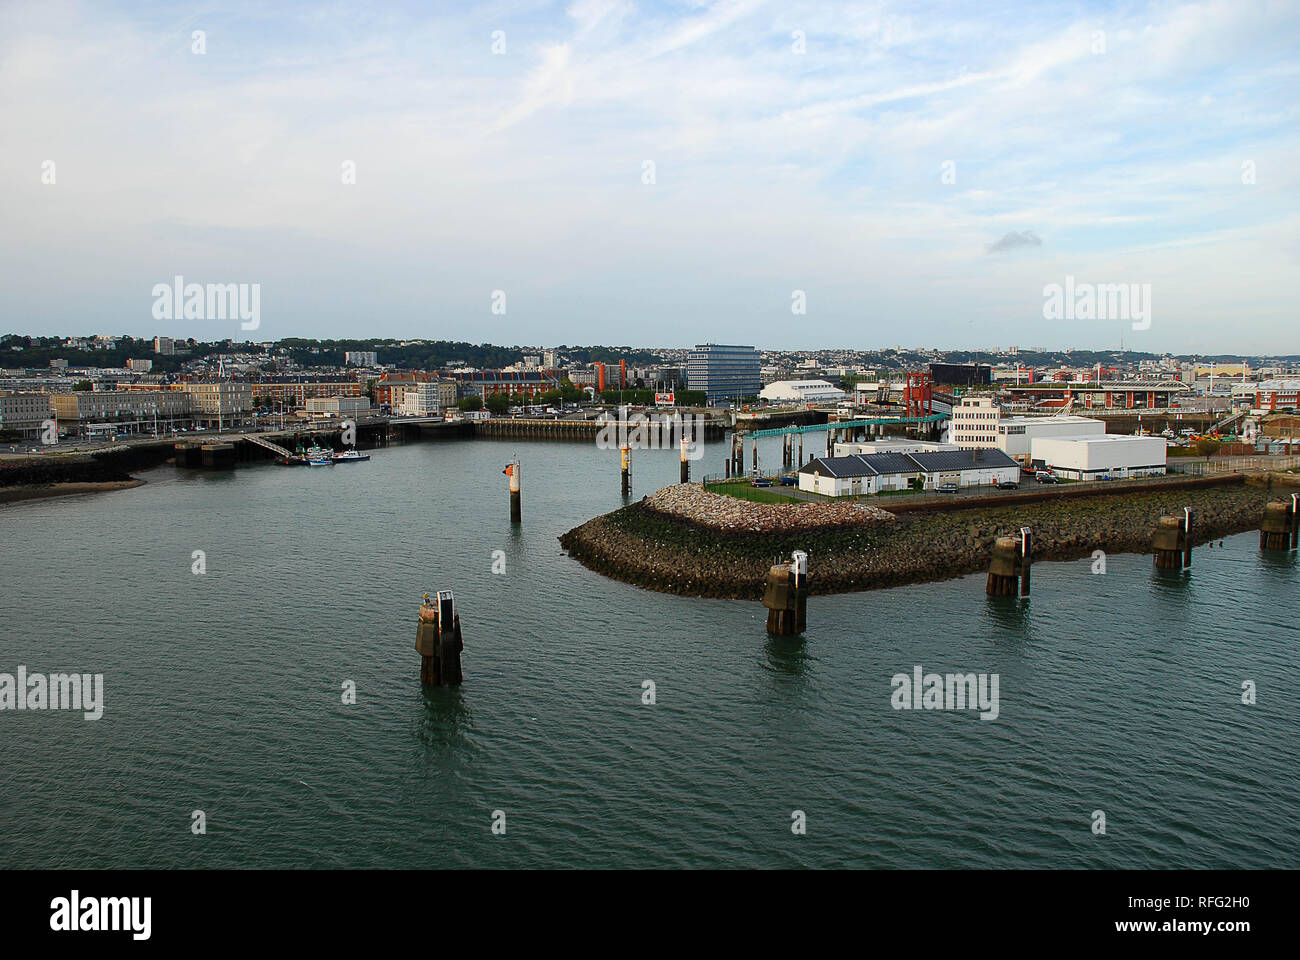 Le port du Havre (Normandie, France). Le Havre est une commune française, située dans le département de la normandie de nort Banque D'Images